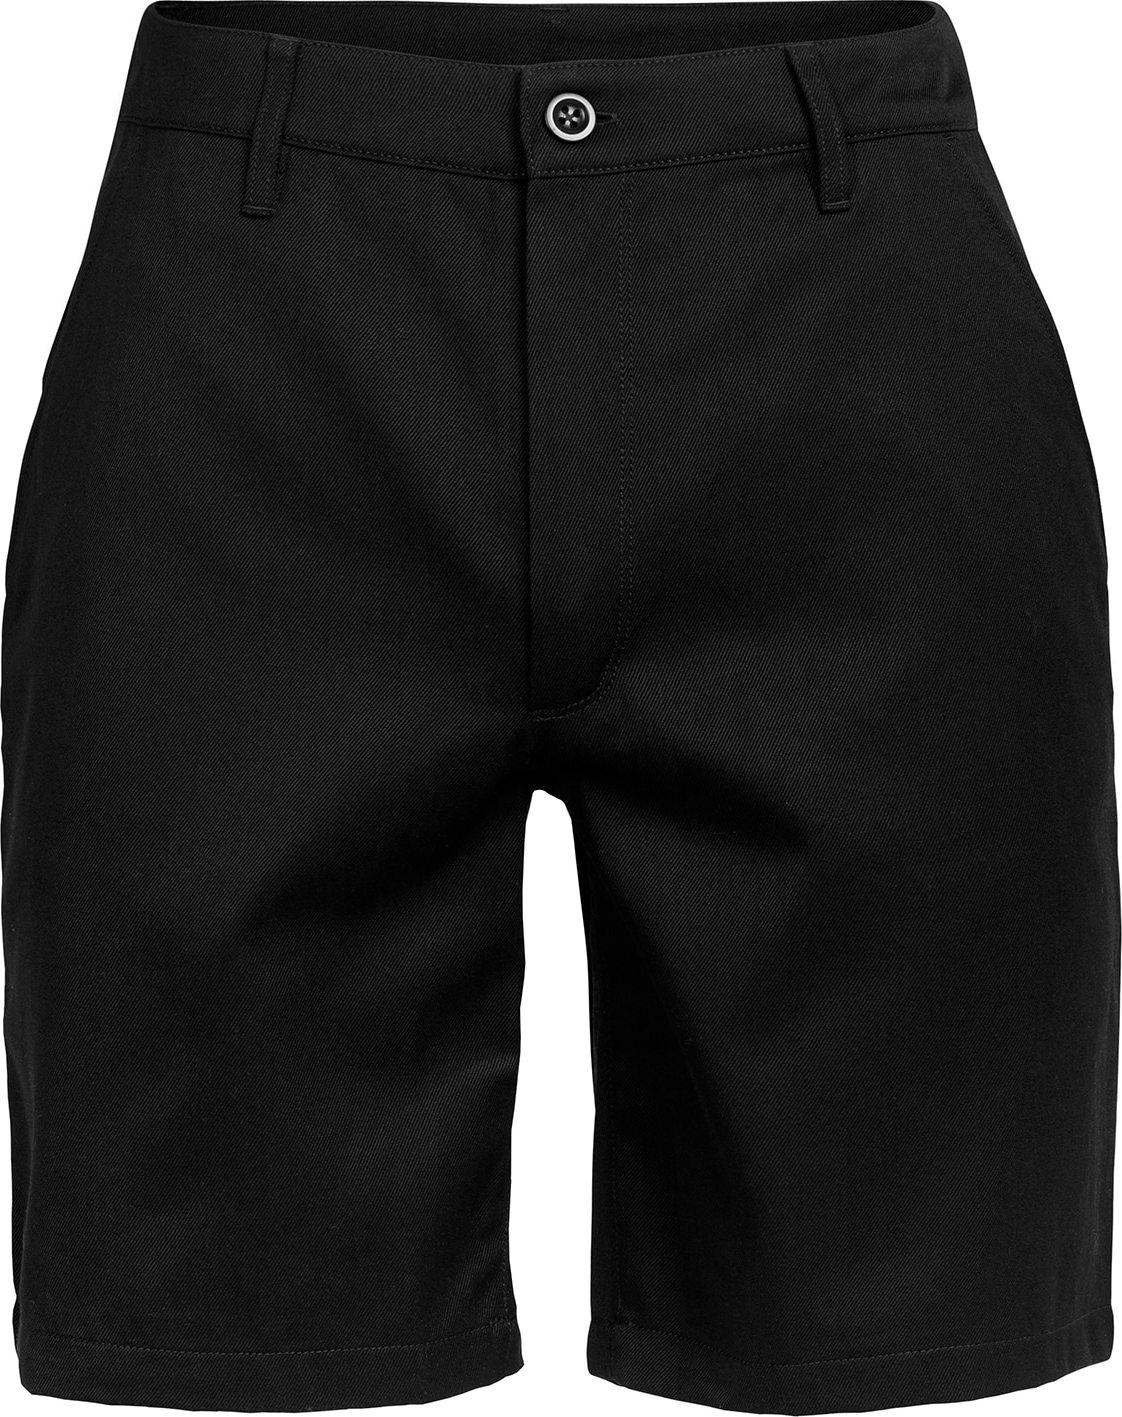 ICEBREAKER Outdoorové kalhoty 'Berlin' černá